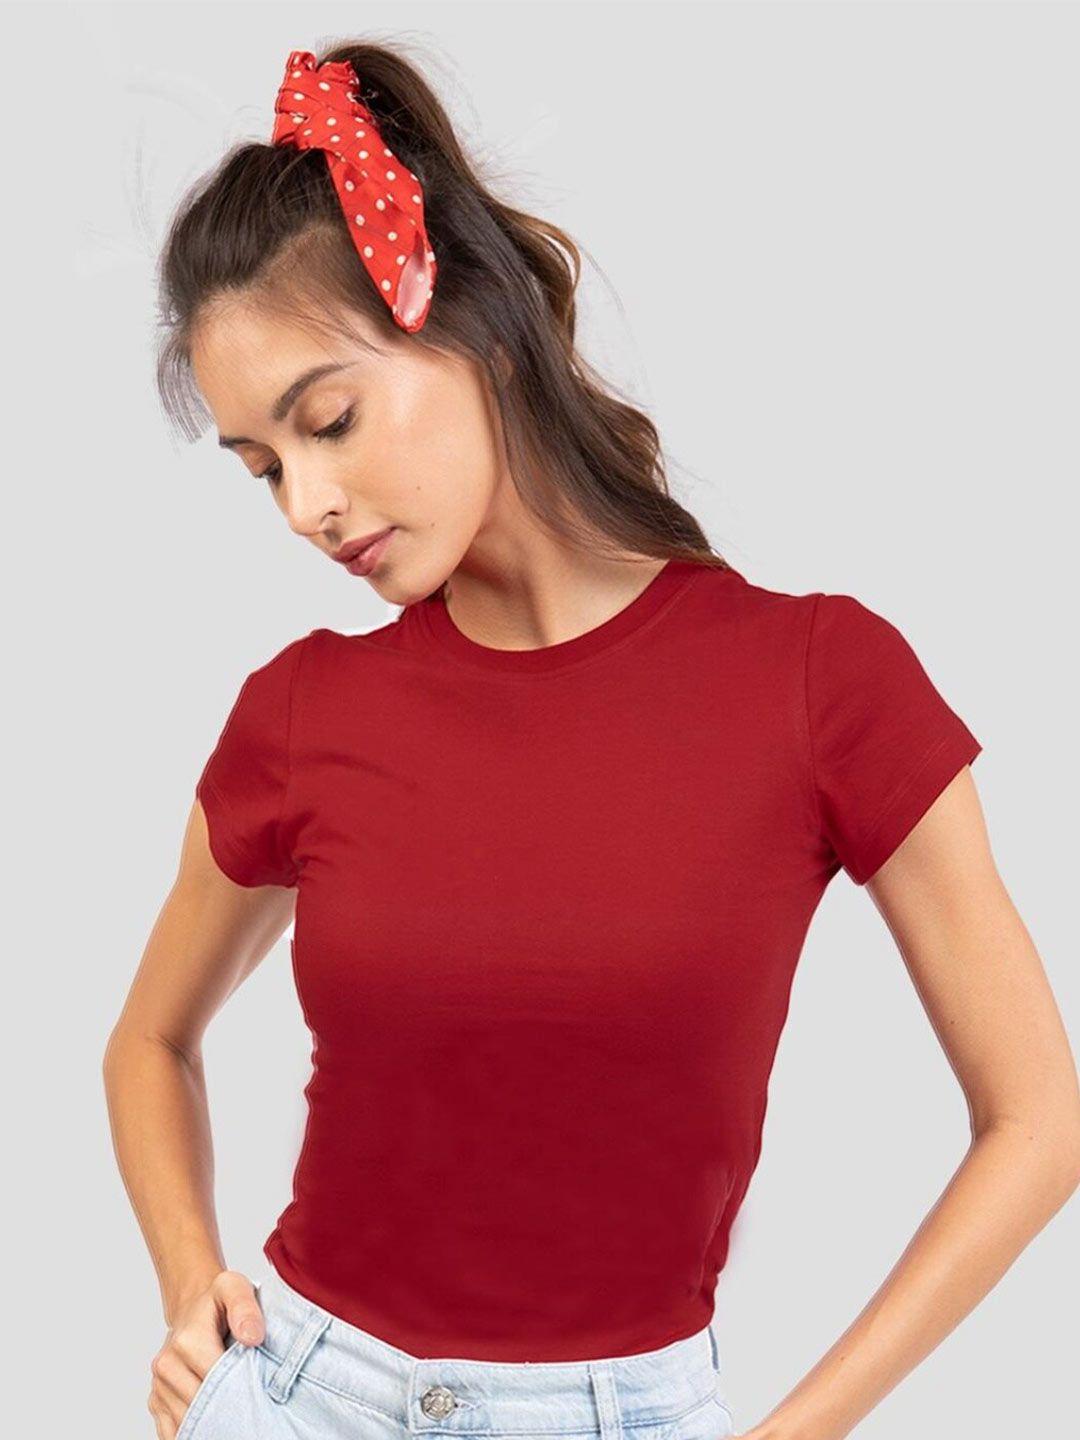 bewakoof women red pure cotton slim fit t-shirt